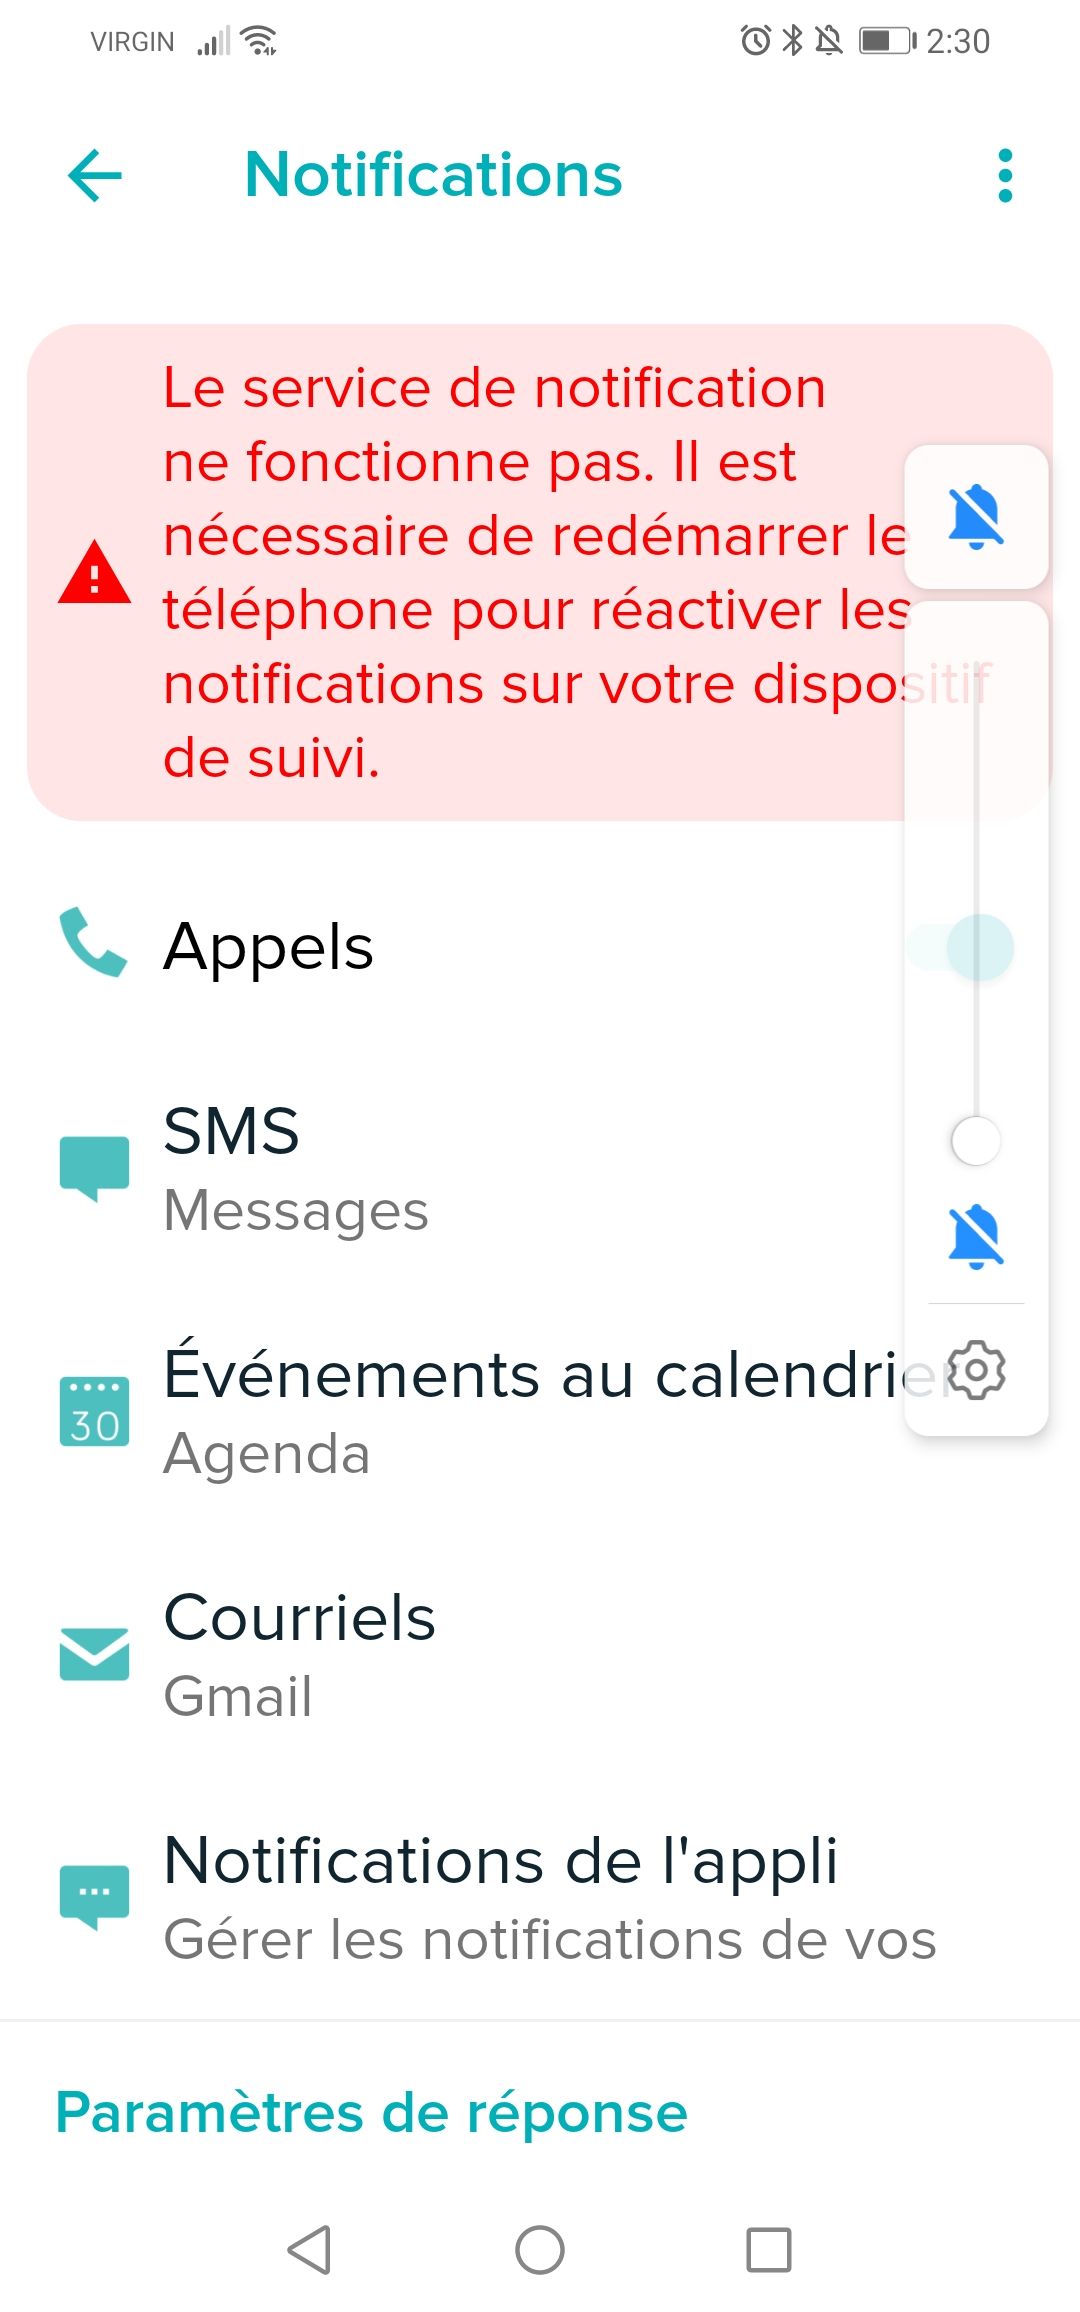 Le service de notification n'est pas activé - Page 2 - Fitbit Community